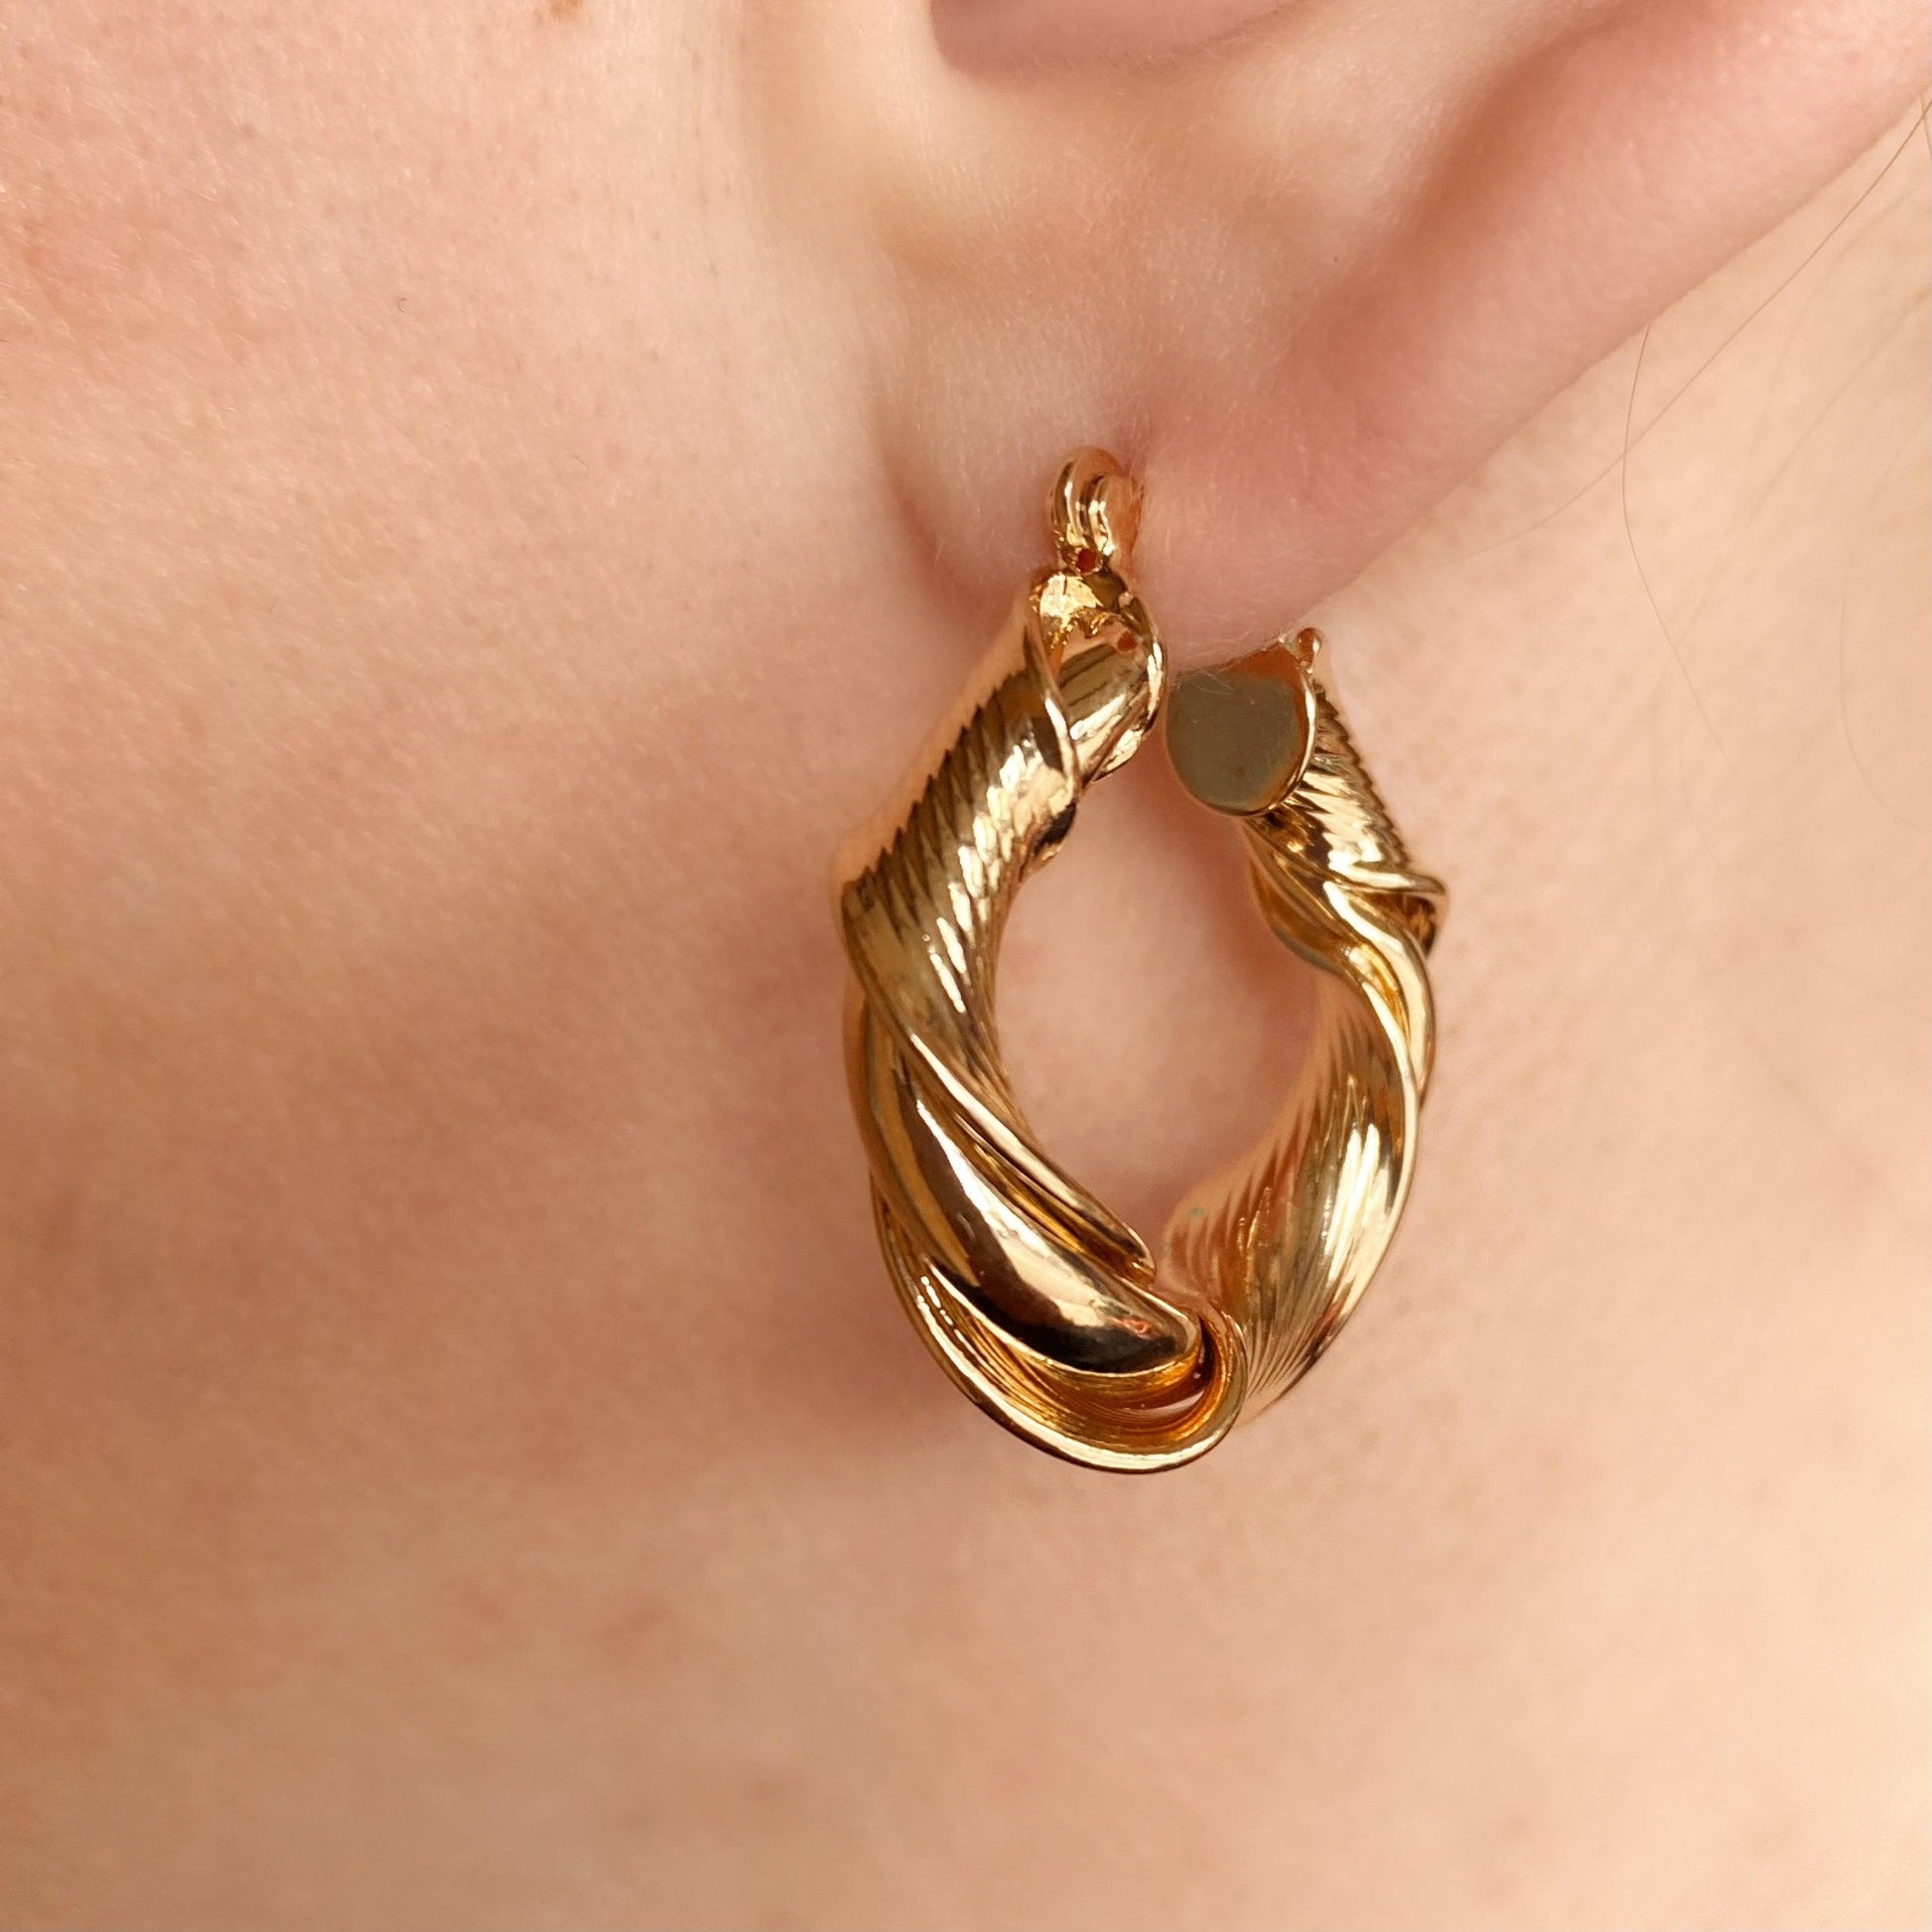 GoldFi 18k Gold Filled Twisted Hoop Earrings